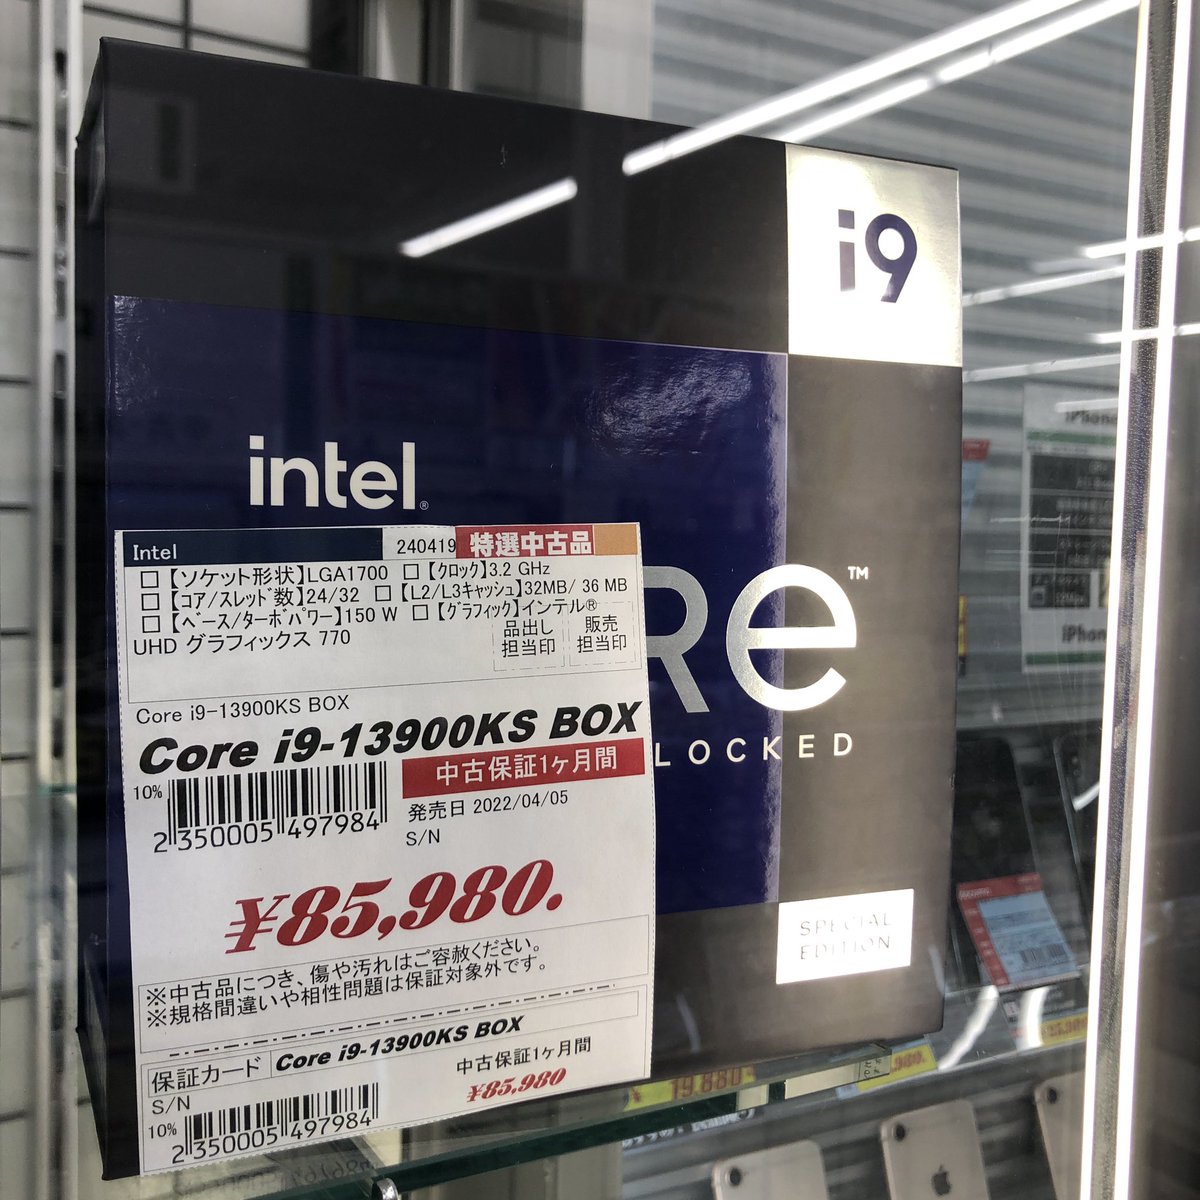 🔥中古品速報🔥
i9-13900KS BOX が入荷しました！
税込¥85,980-
中古の日対象品です！
中古の日だと10%OFFで買えちゃうゾ

#中古
#パソコン工房